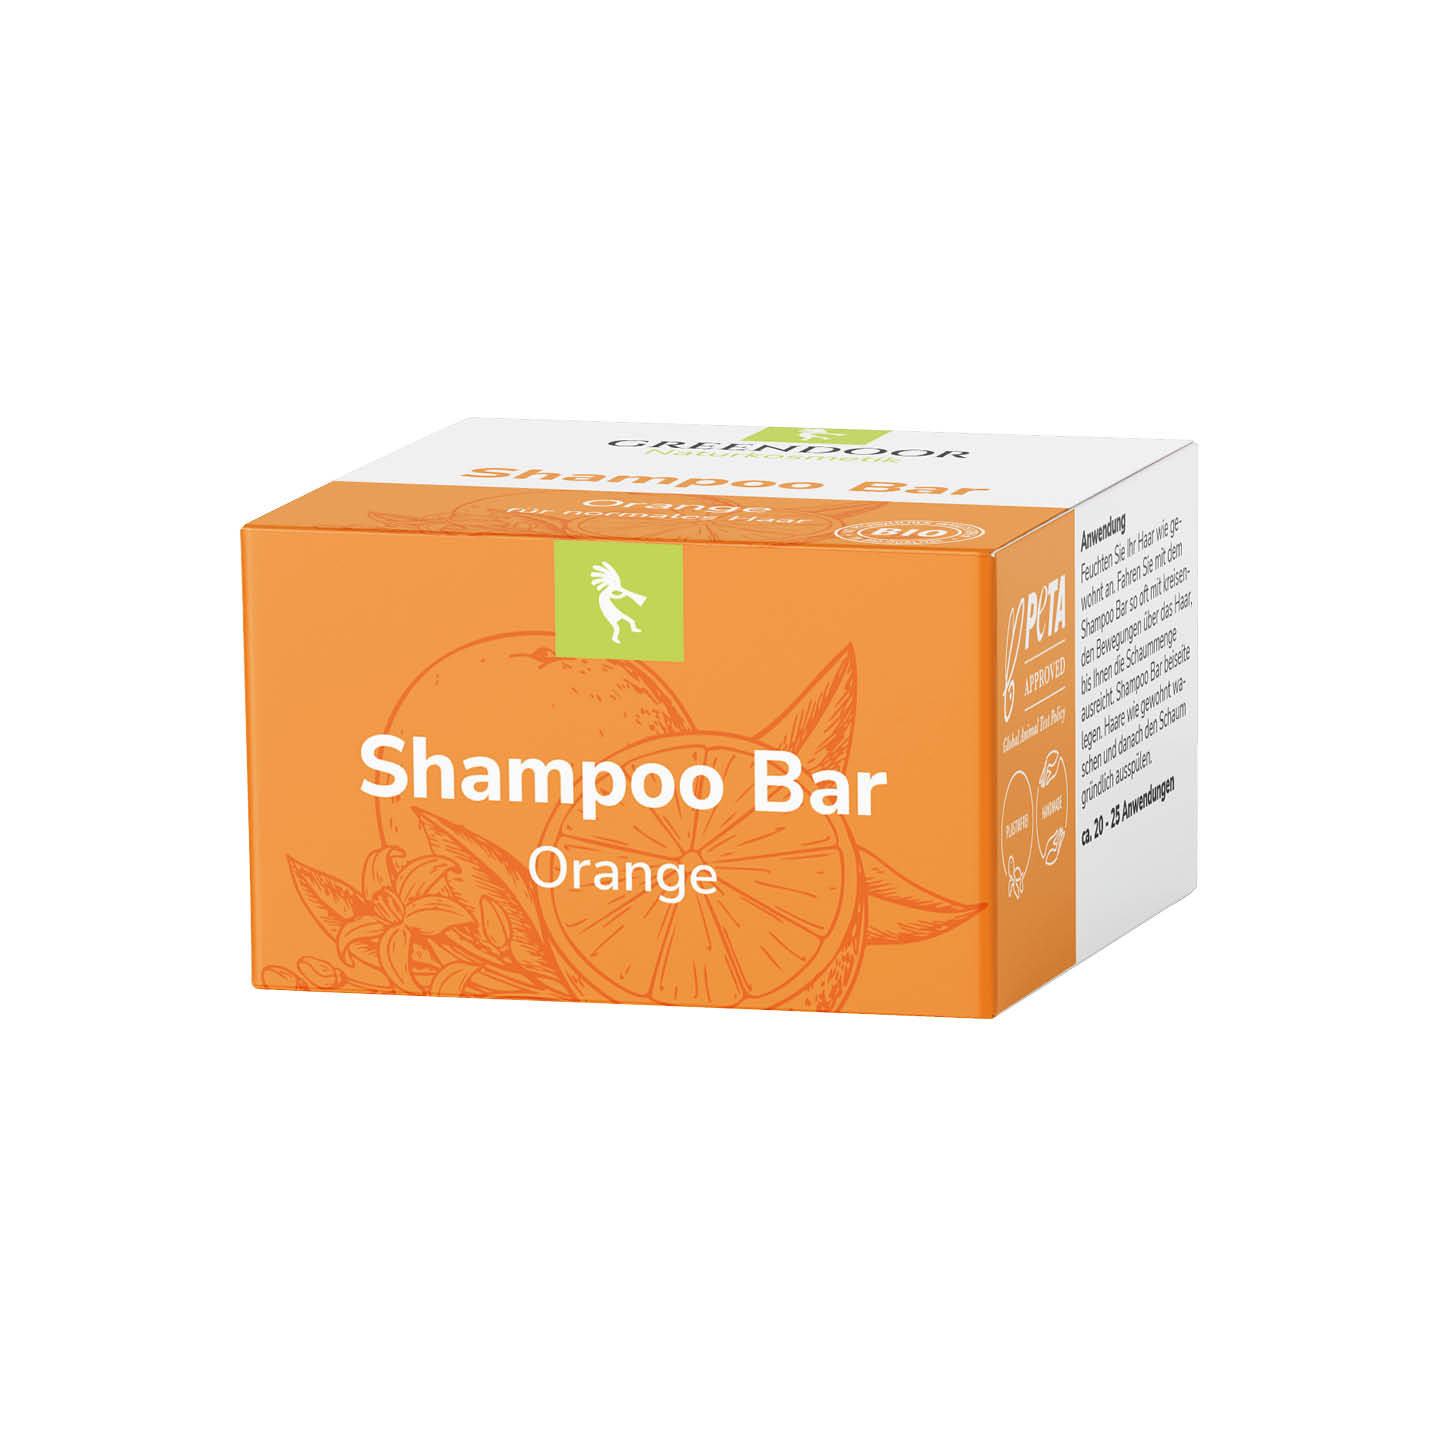 Shampoo Bar Orange